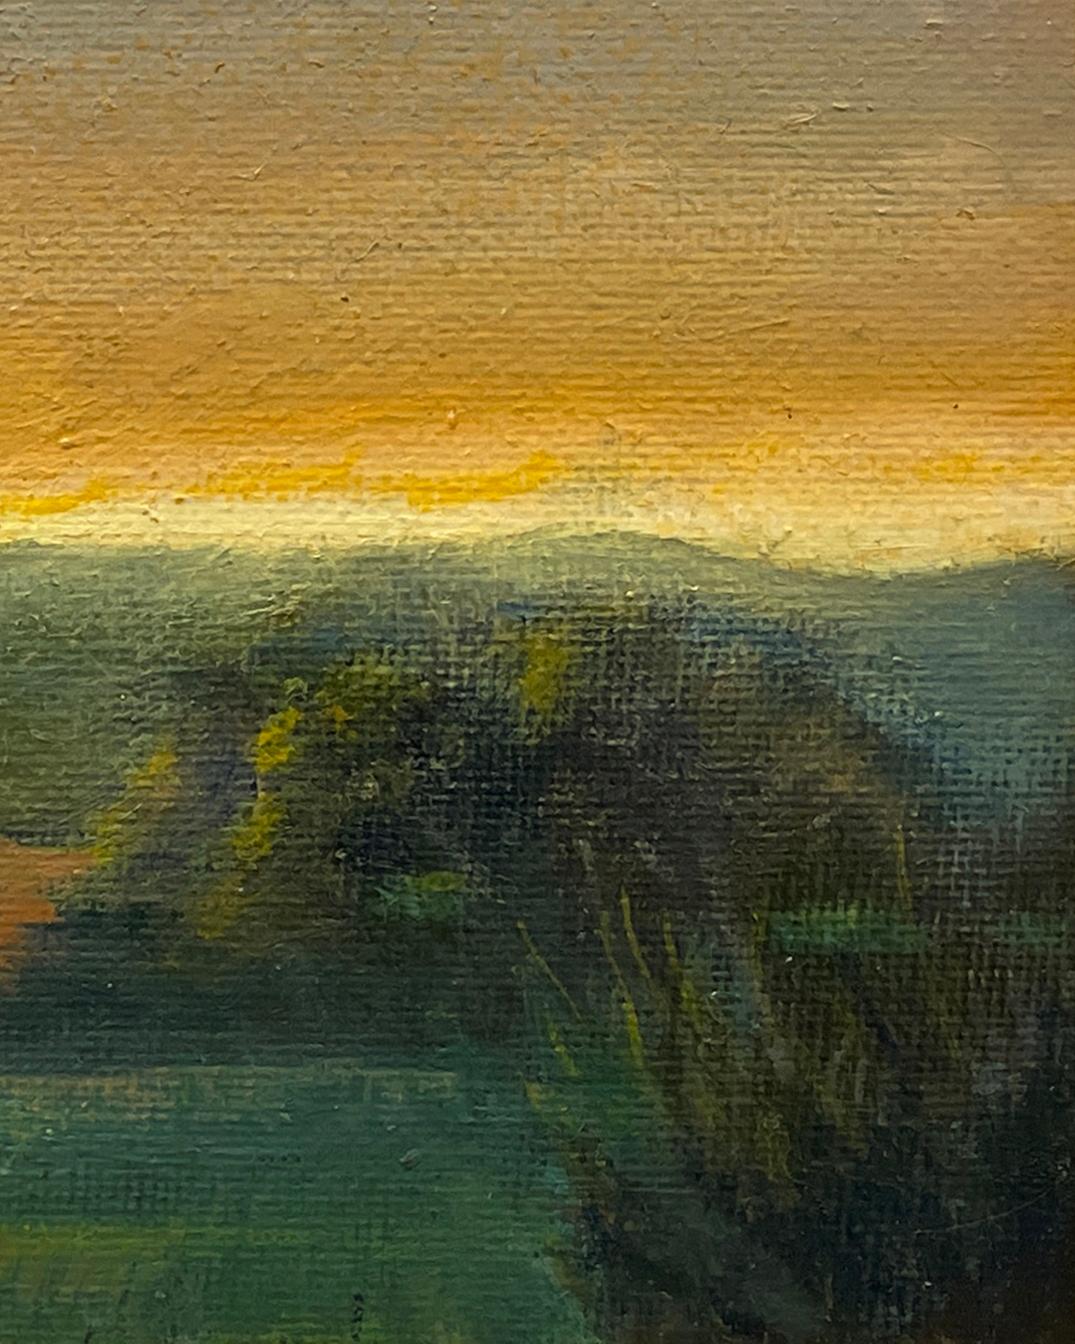 Weicher Himmel (Landschaft unter dem Einfluss der Hudson River School) von Judy Reynolds, 2023
5 x 7 Zoll, Öl auf Leinwand, Goldrahmen, 6,5 x 8,5 Zoll gerahmt
In einem Stil, der an die Maler der Hudson River School erinnert, realisiert Judy Reynolds